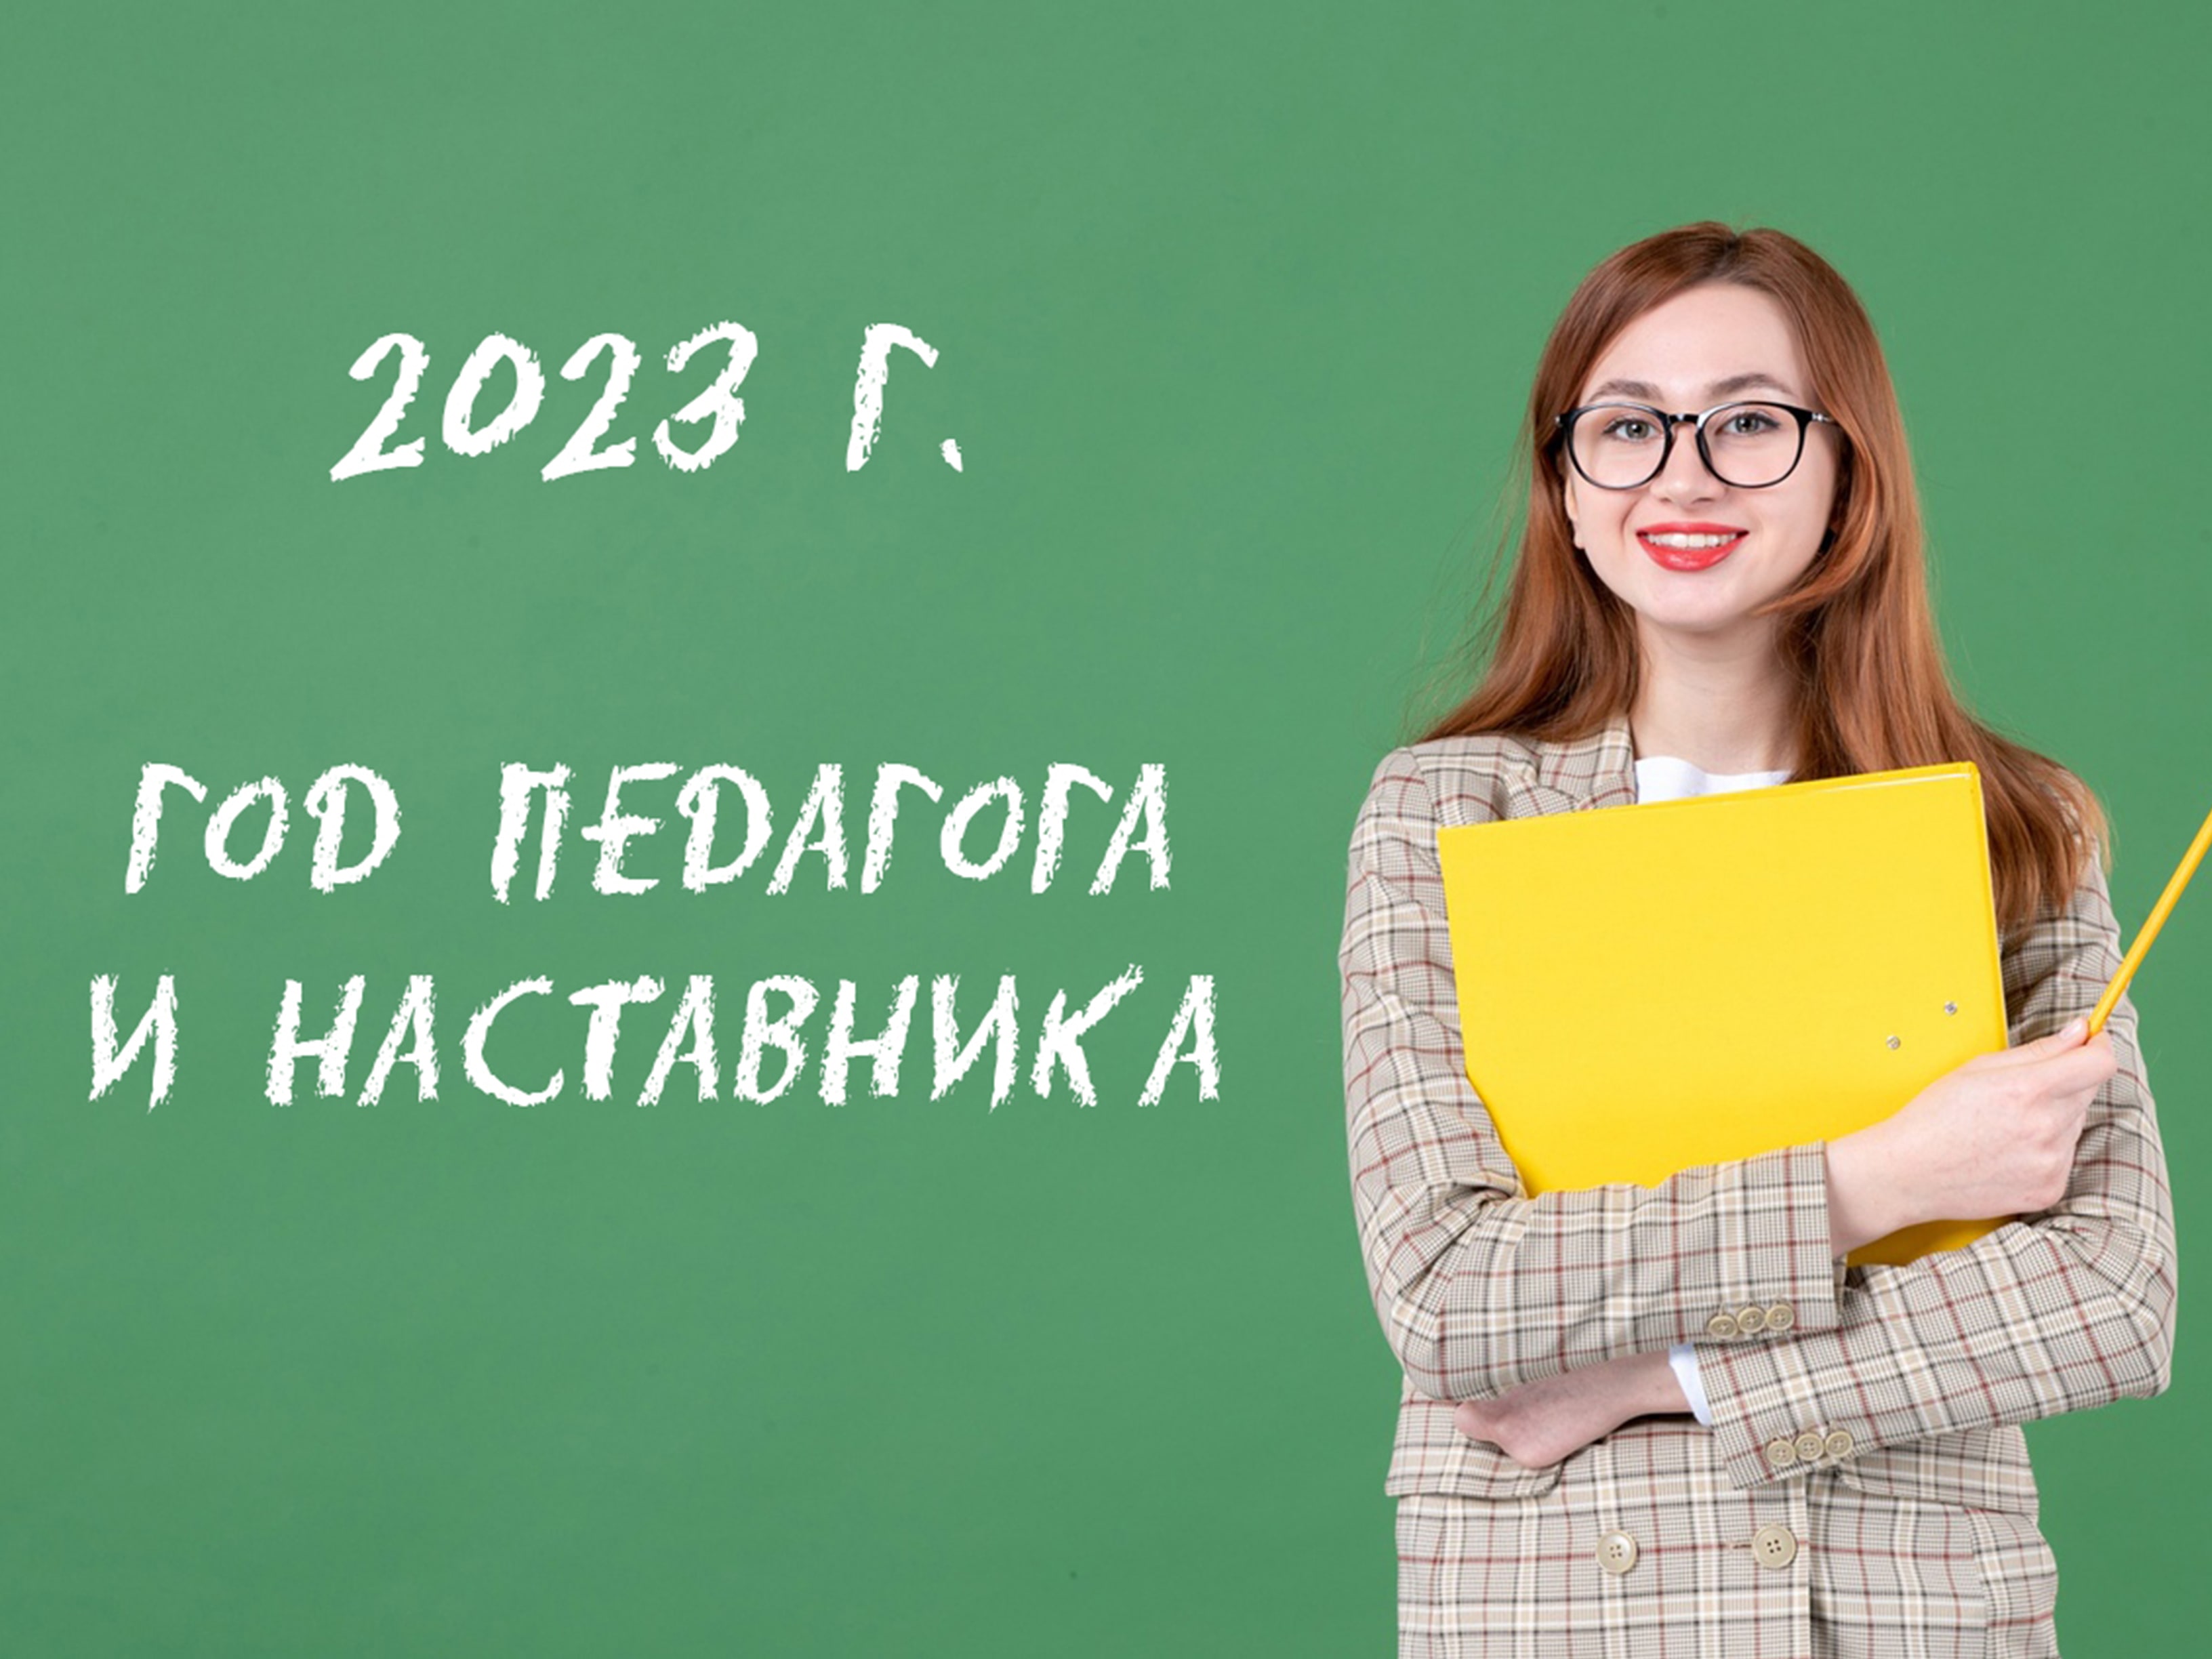 Всероссийский конкурс педагогического мастерства «Педагог будущего», посвящённый году педагога и наставника в 2023 году